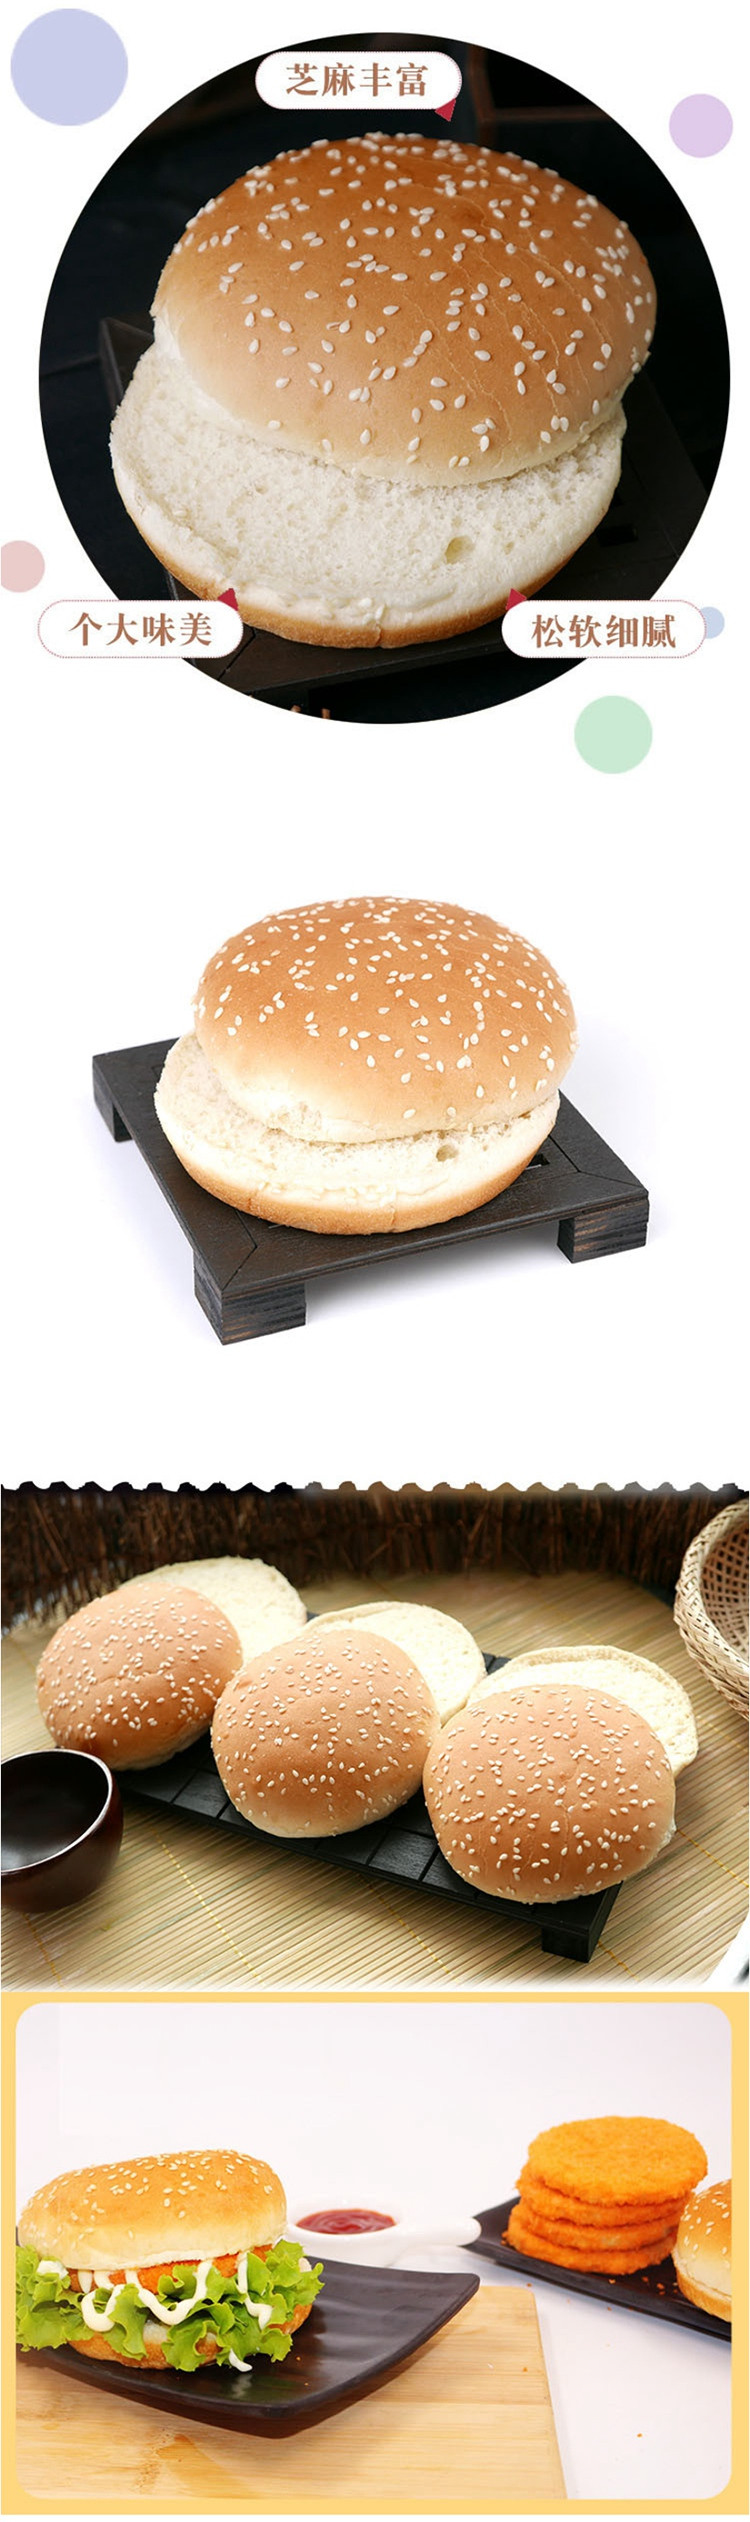 【批发3组装】麦德盛营养早餐圆形汉堡面包18个/包